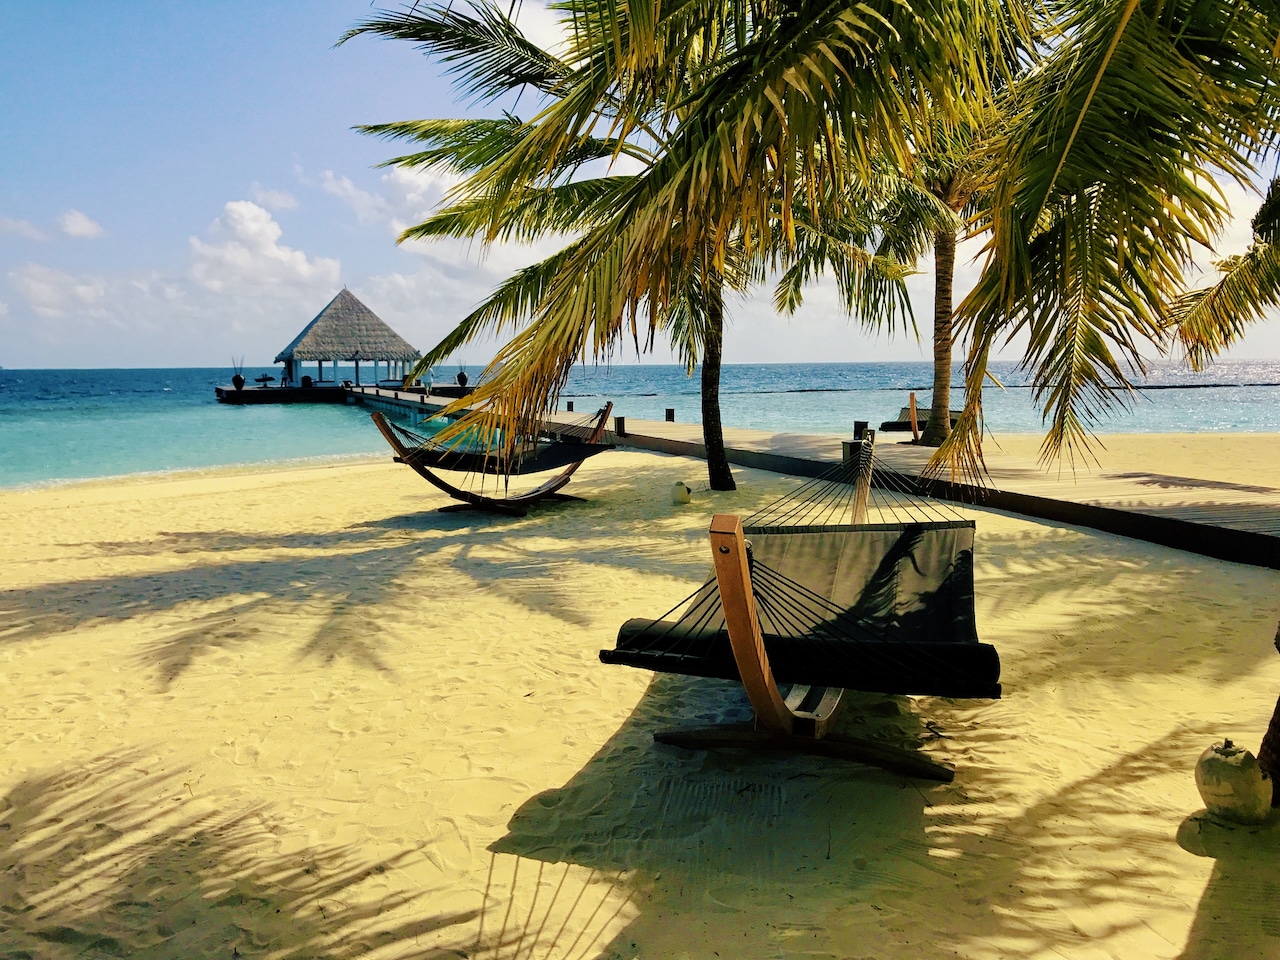 La isla turística de cinco estrellas de Coco Bodu Hithi ha recibido críticas abrumadoramente positivas de los huéspedes en HolidayCheck, TripAdvisor y booking.com. Foto de : Sascha Tegtmeyer